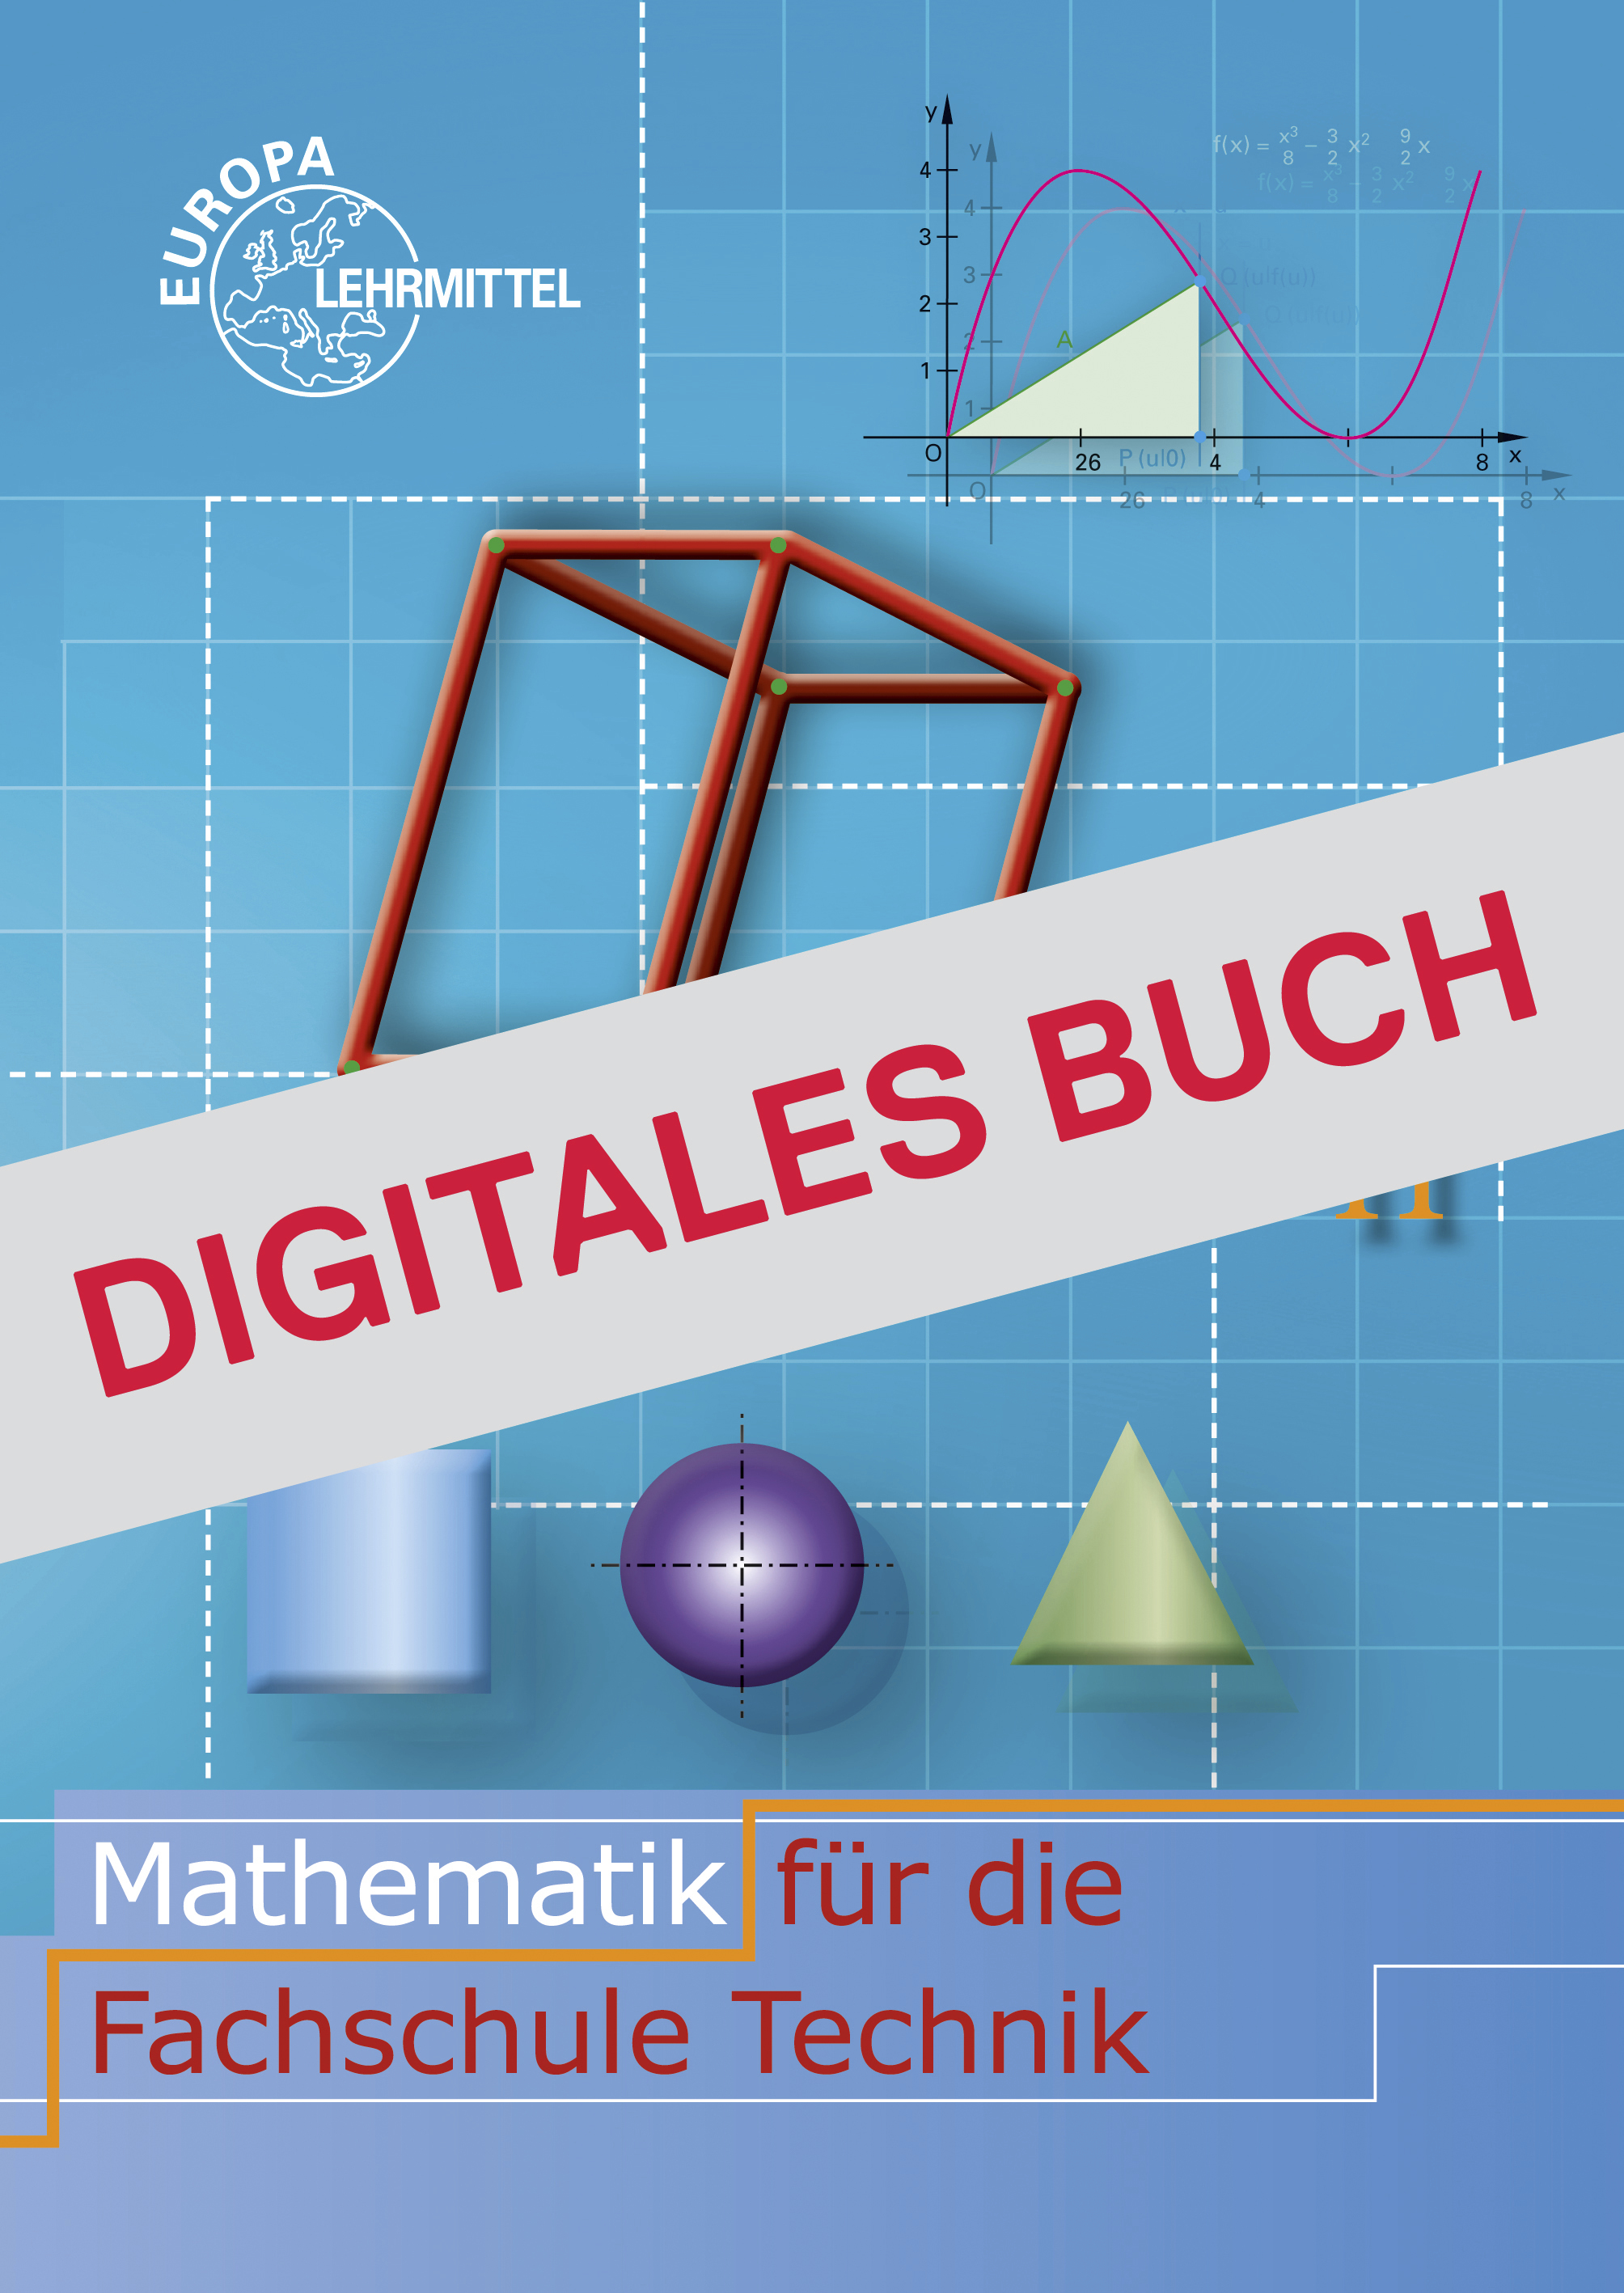 Mathematik für die Fachschule für Technik - Digitales Buch